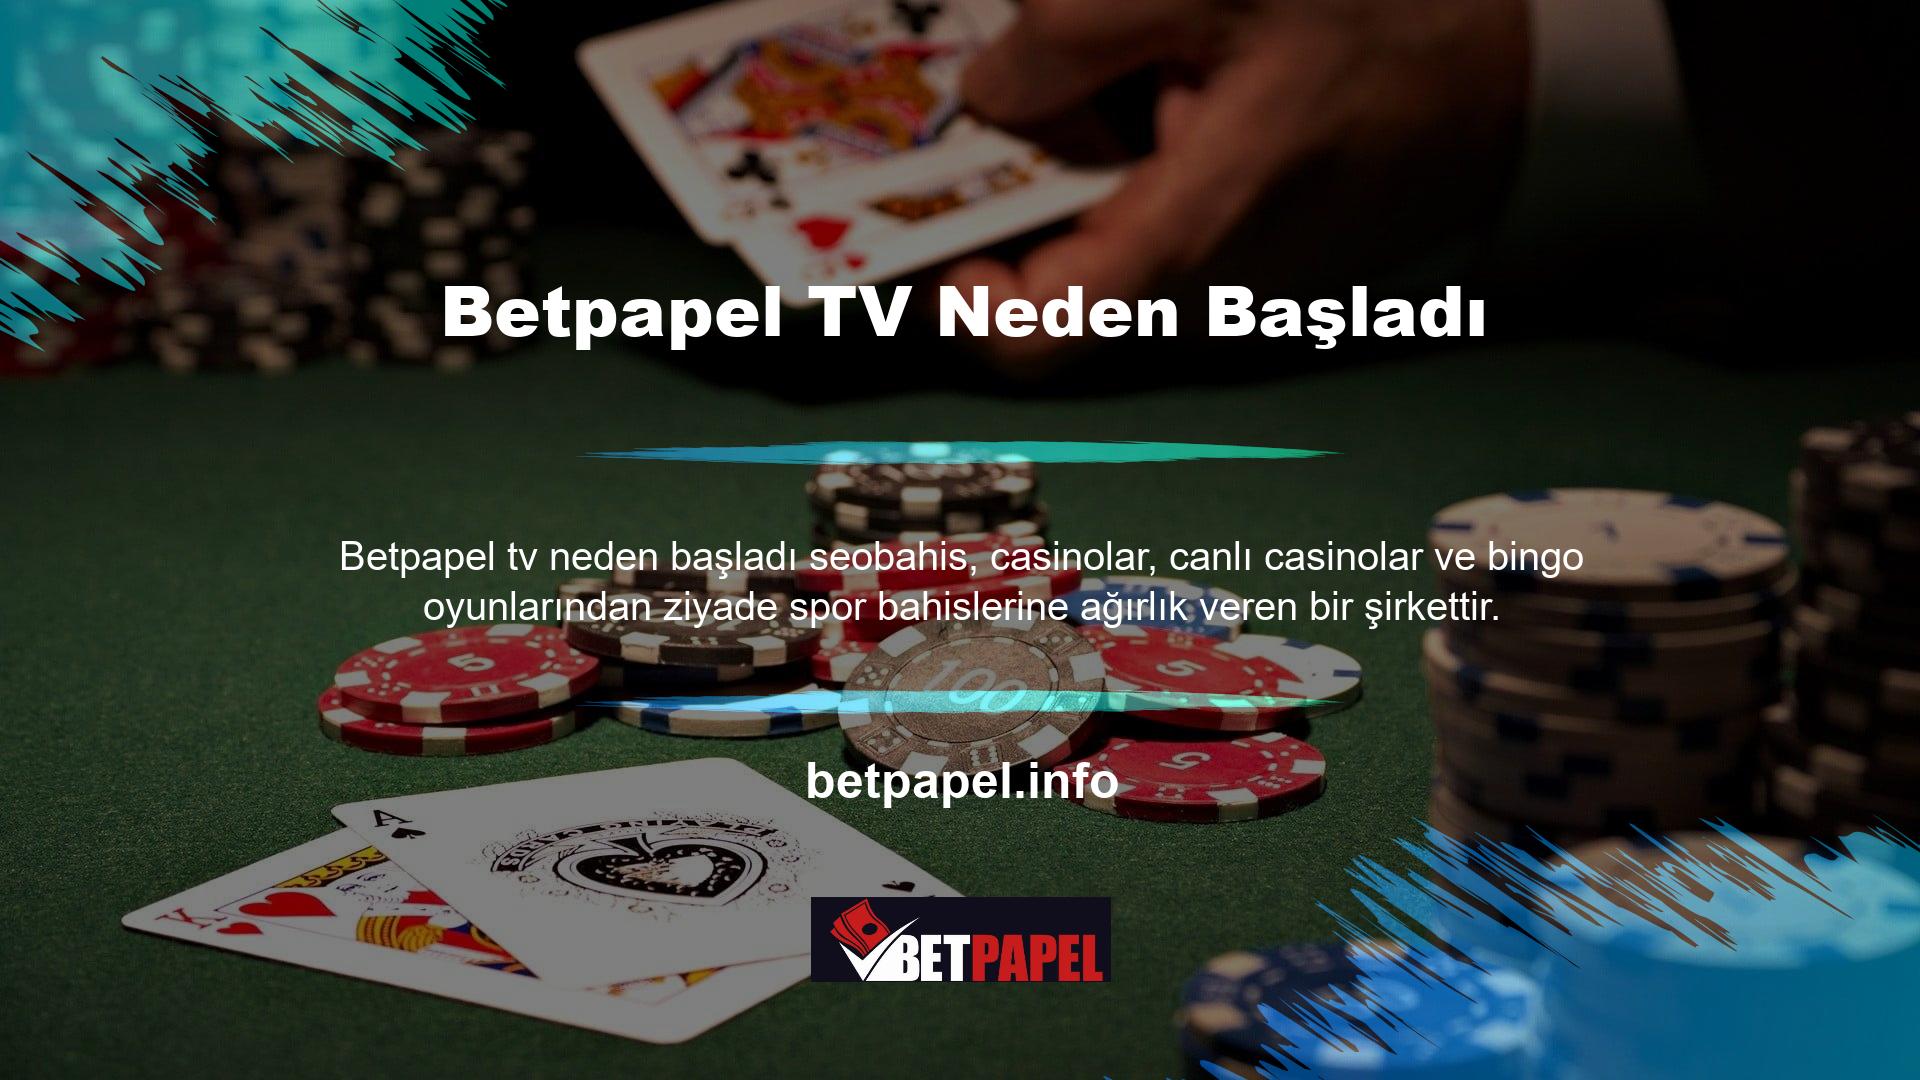 Betpapel TV'nin başlangıcı, çok sayıda oyuncunun spor bahislerine önemli ölçüde dahil olmasına bağlanabilir